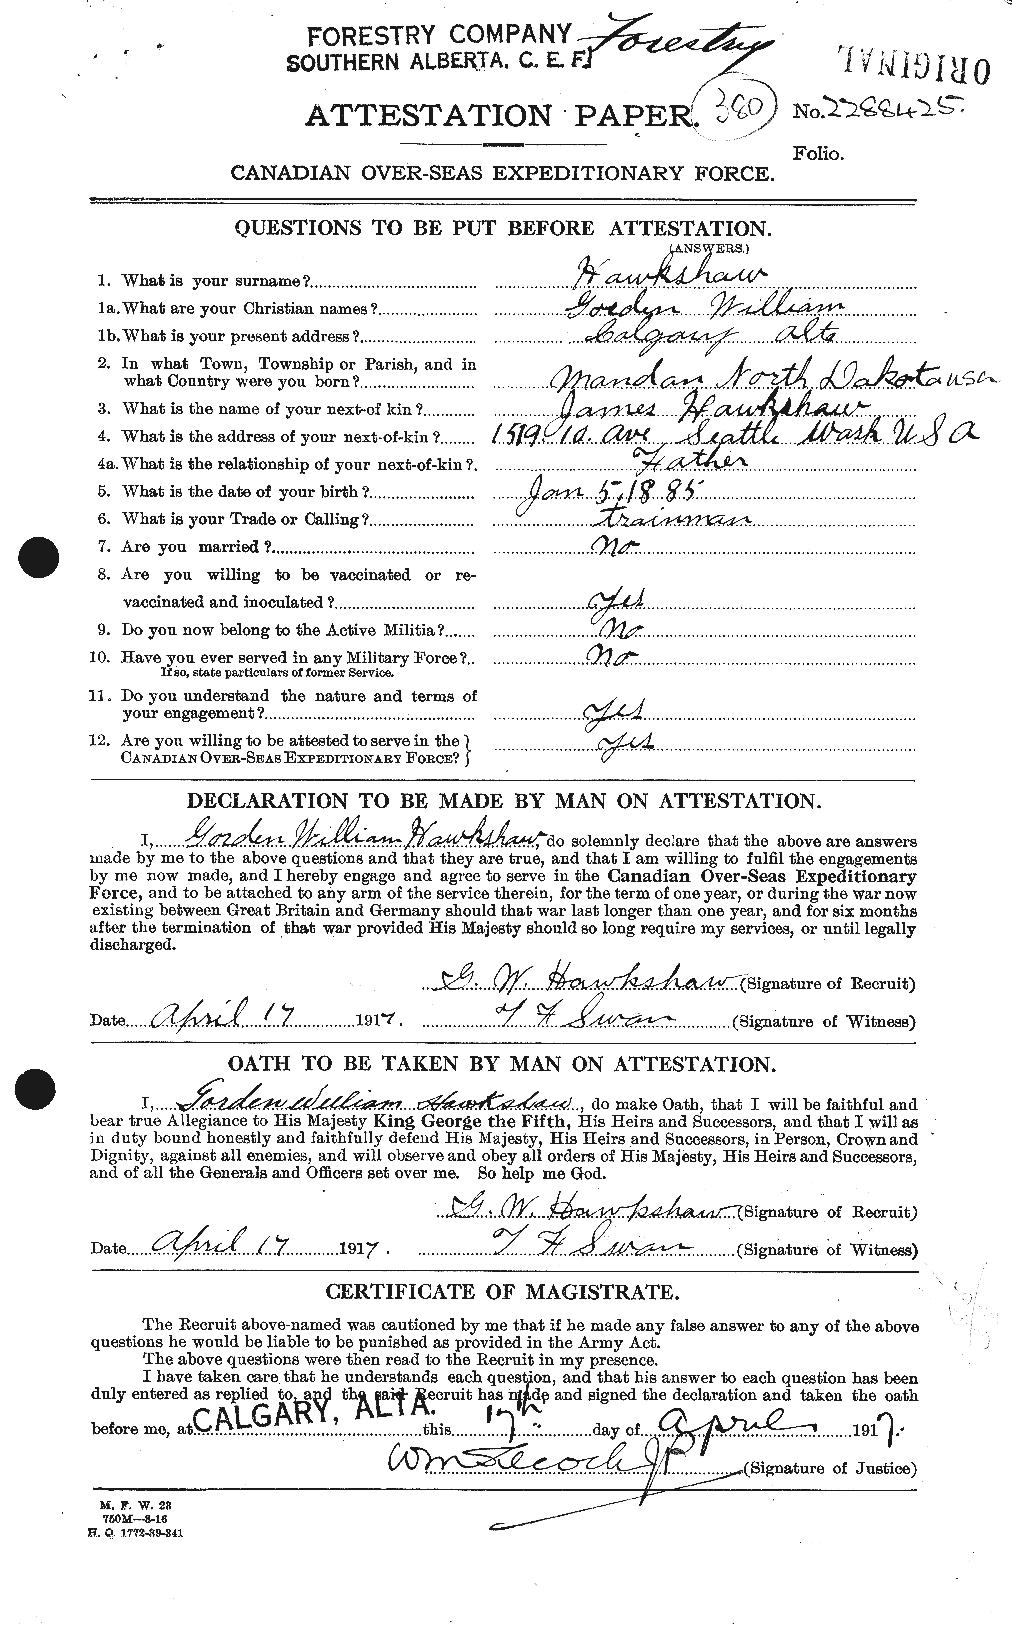 Dossiers du Personnel de la Première Guerre mondiale - CEC 385690a